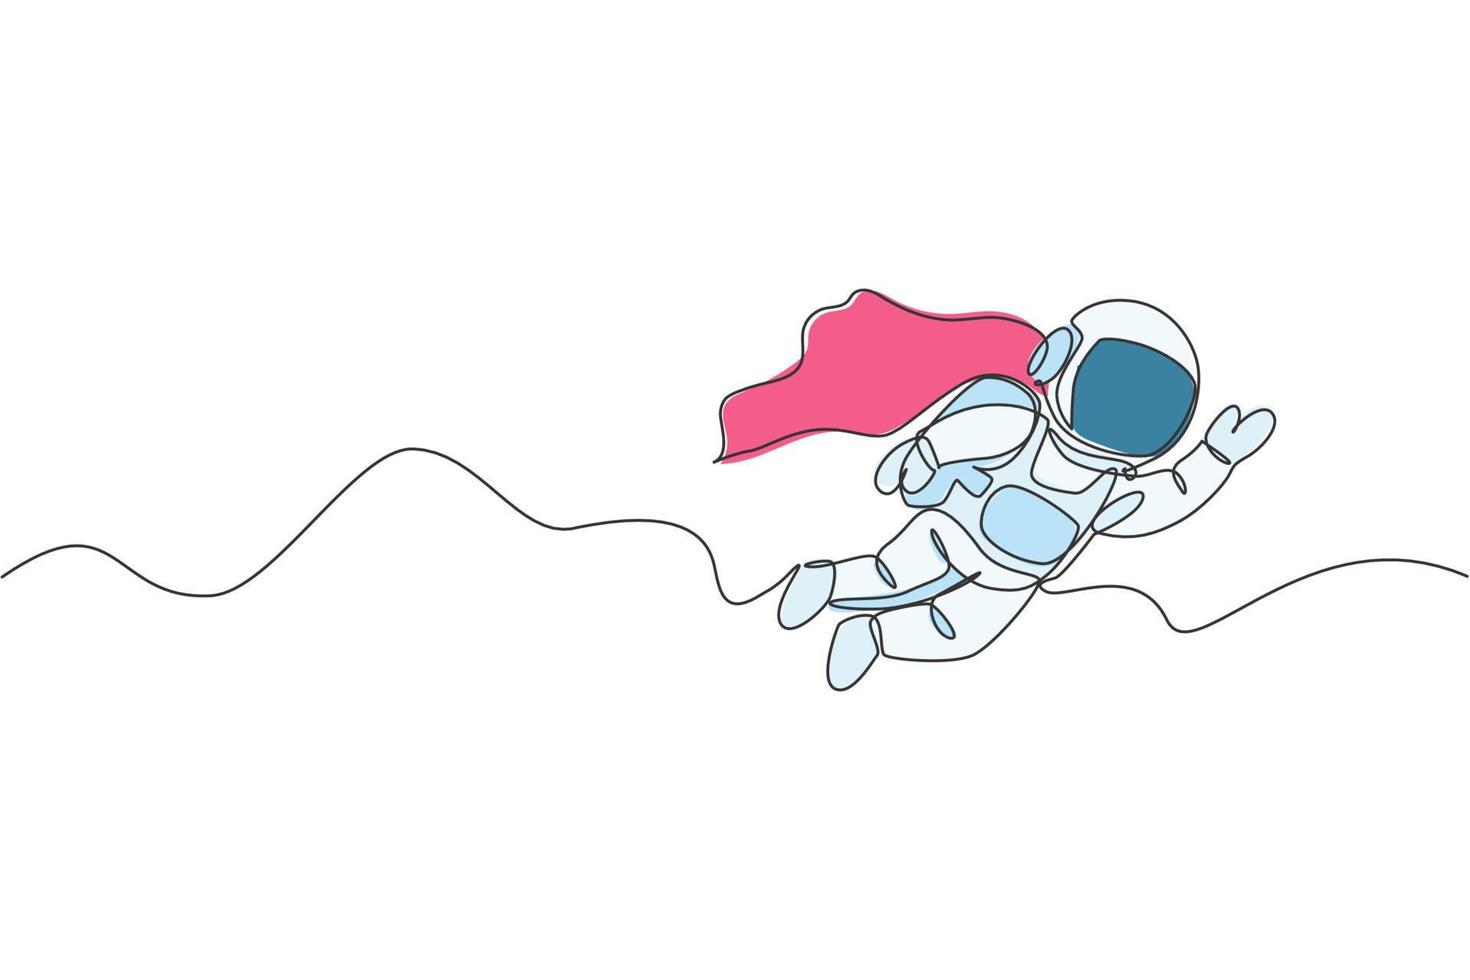 un dibujo de una sola línea del astronauta del hombre del espacio explorando la galaxia cósmica, volando con el ejemplo gráfico del vector del traje del ala. concepto de ficción de vida de espacio exterior de fantasía. diseño moderno de dibujo de línea continua